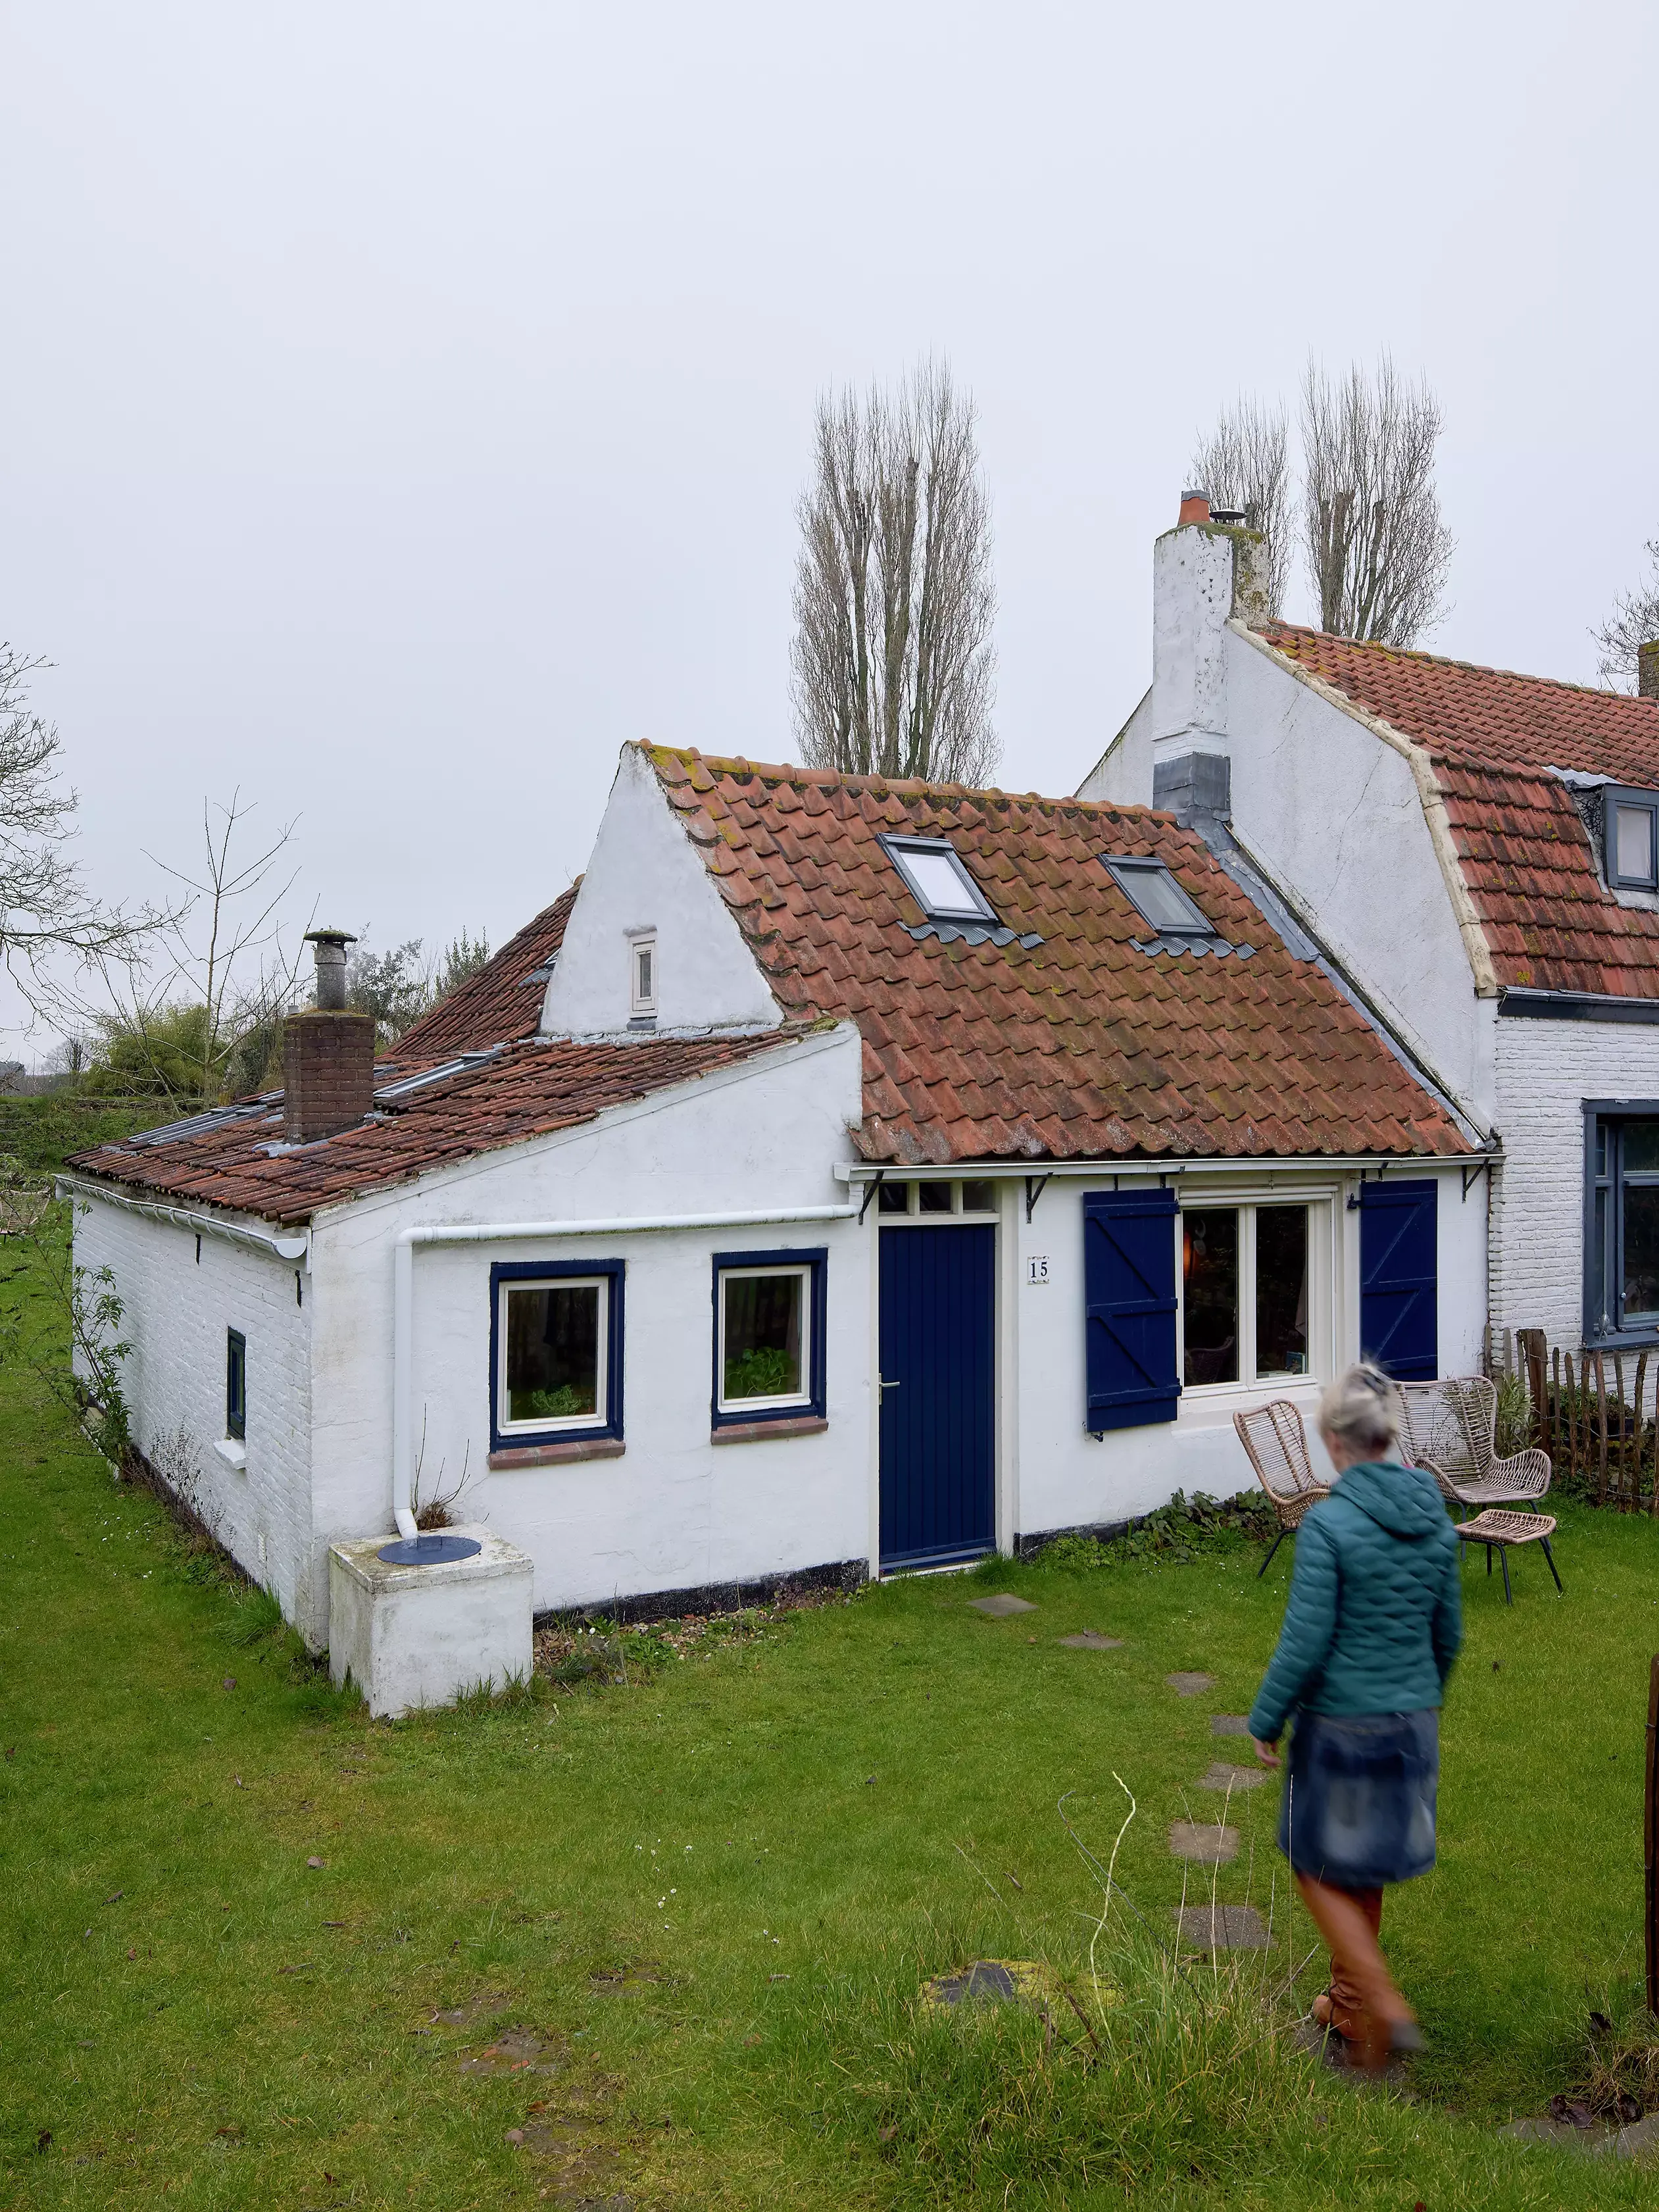 Cottage de campagne avec fenêtre de toit VELUX et une femme qui passe devant.